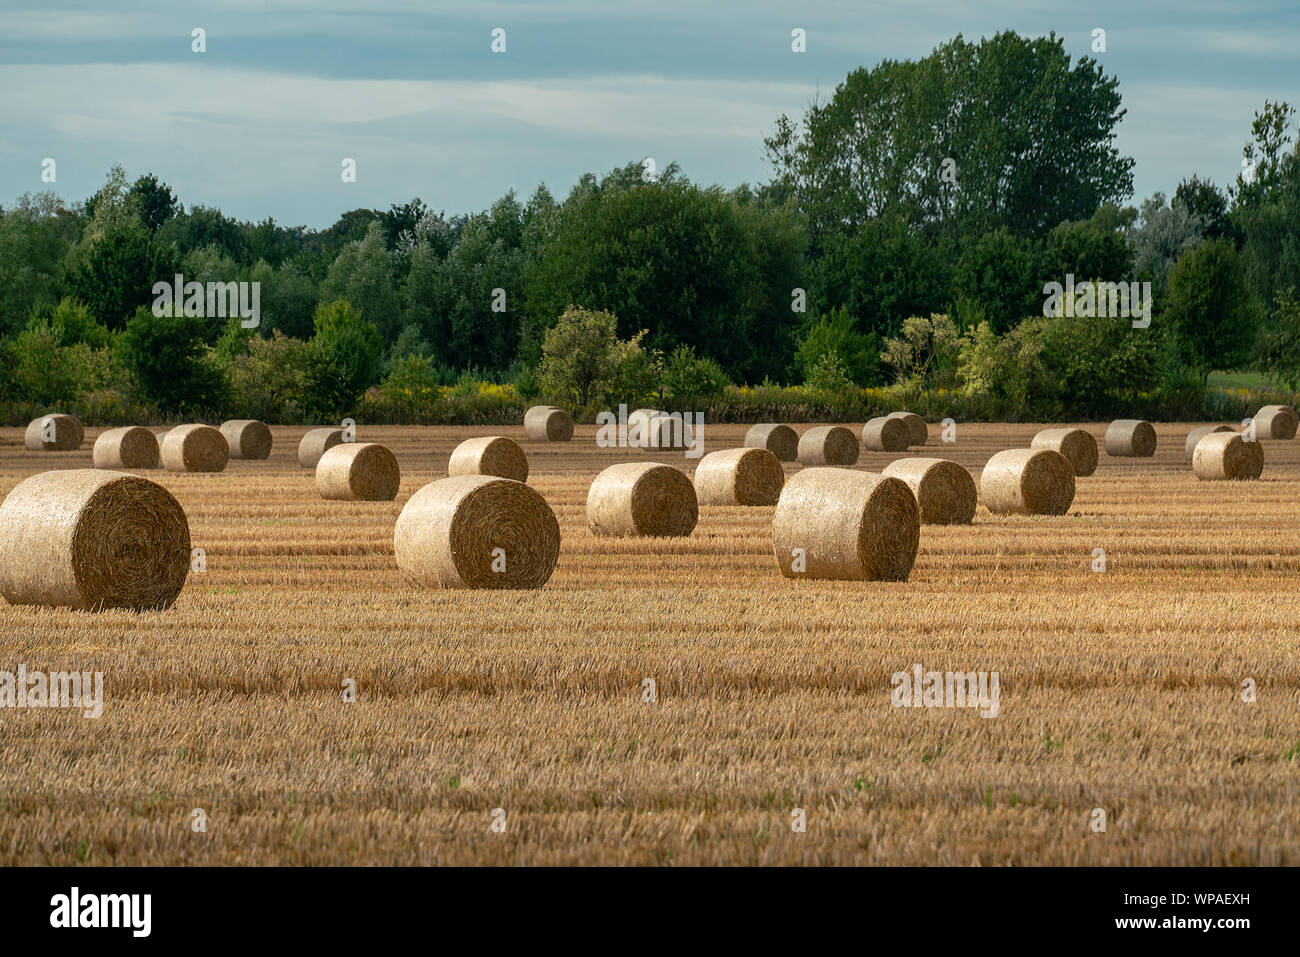 Allegro autunno scena con le balle di paglia su una falciata campo di grano sotto il sole con nubi imponenti in skye Foto Stock